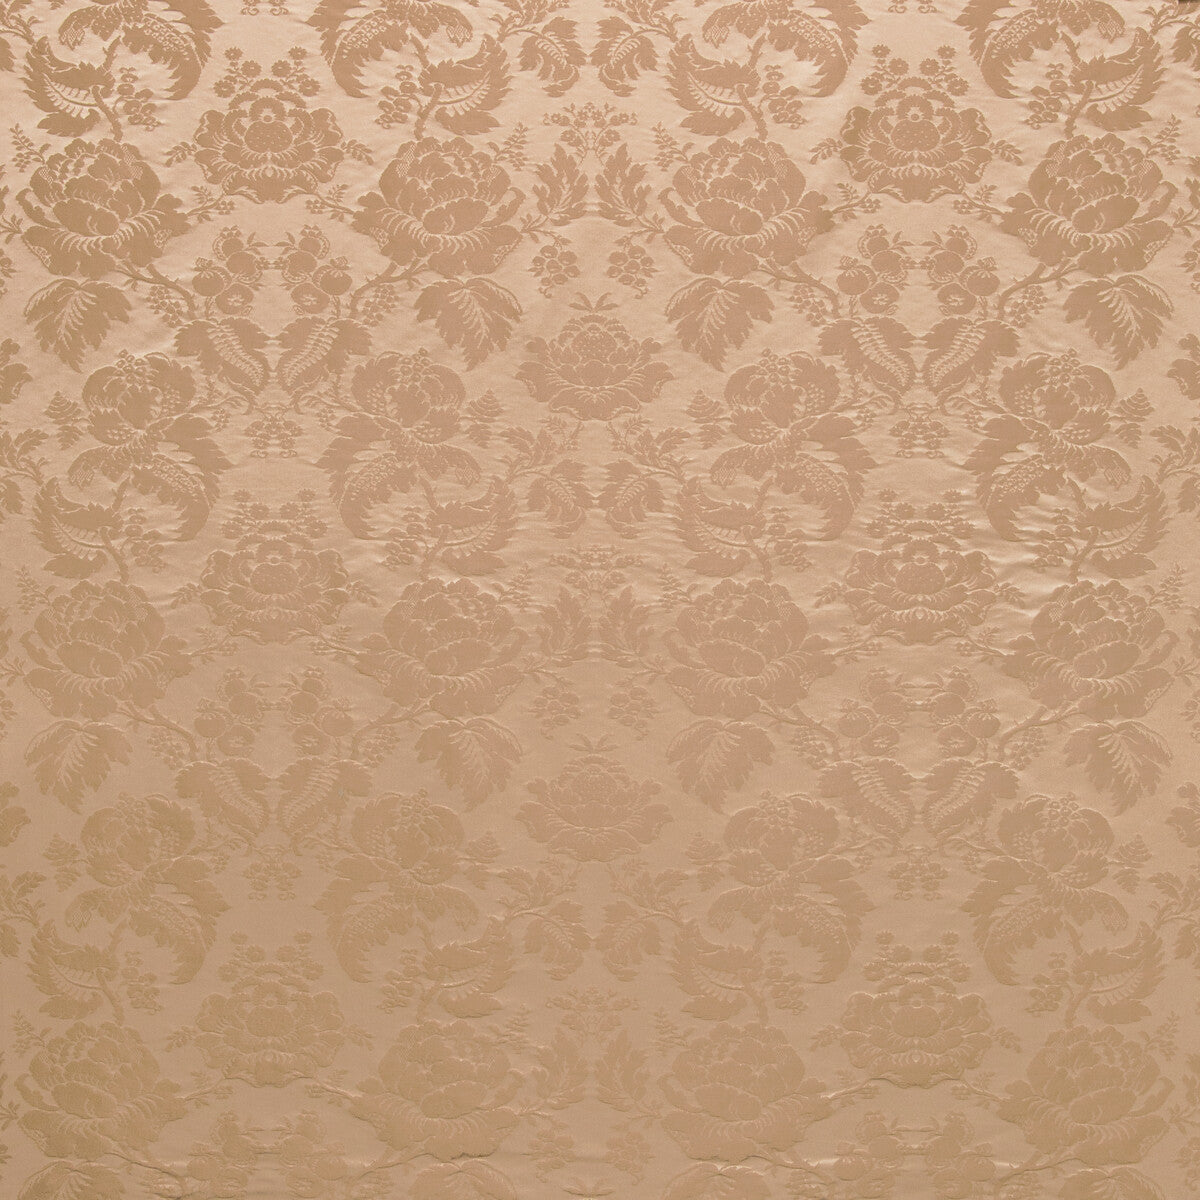 Moulins Damask fabric in chestnut color - pattern BR-81035.606.0 - by Brunschwig &amp; Fils